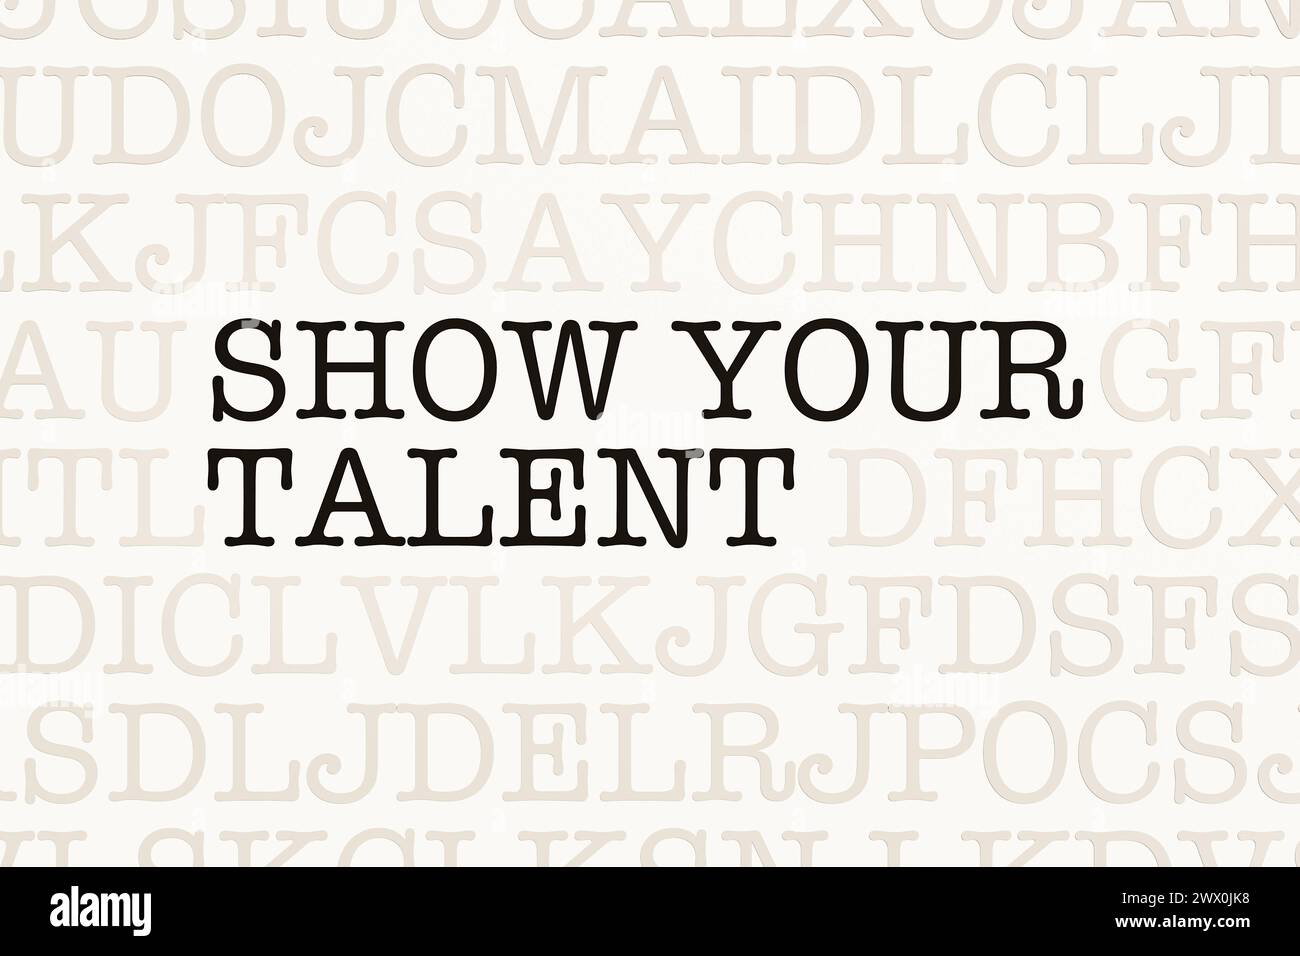 Zeigen Sie Ihr Talent. Zeigen Sie Ihr Talent. Seite mit Buchstaben in Schreibmaschinenschrift. Teil des Textes in dunkler Farbe. Unterhaltung, Bühnenvorstellung, Vorsprechen, Stockfoto